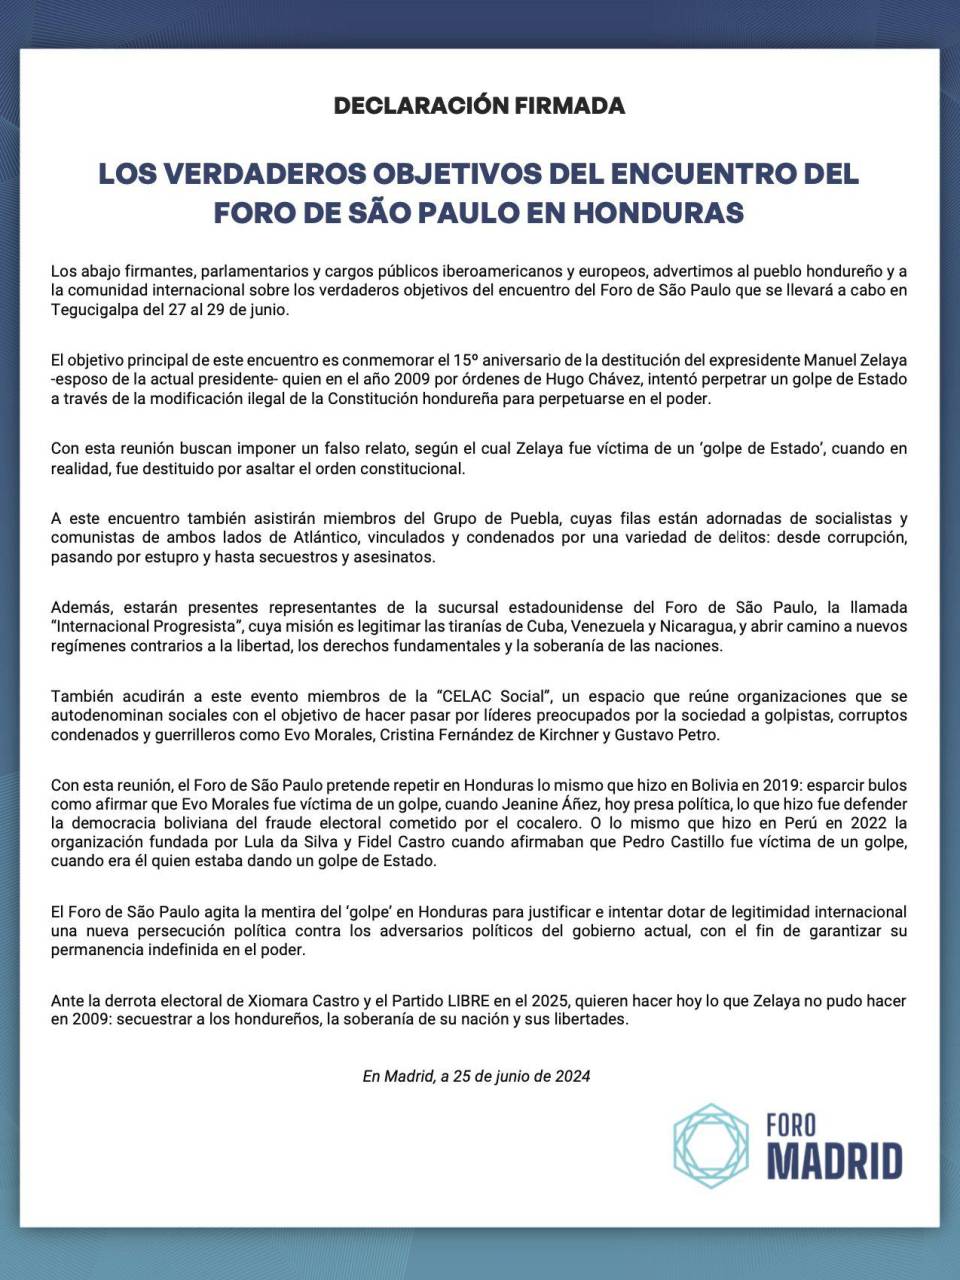 Foro de Madrid dice que Foro de Sao Paulo busca “agitar mentira del golpe” en Honduras